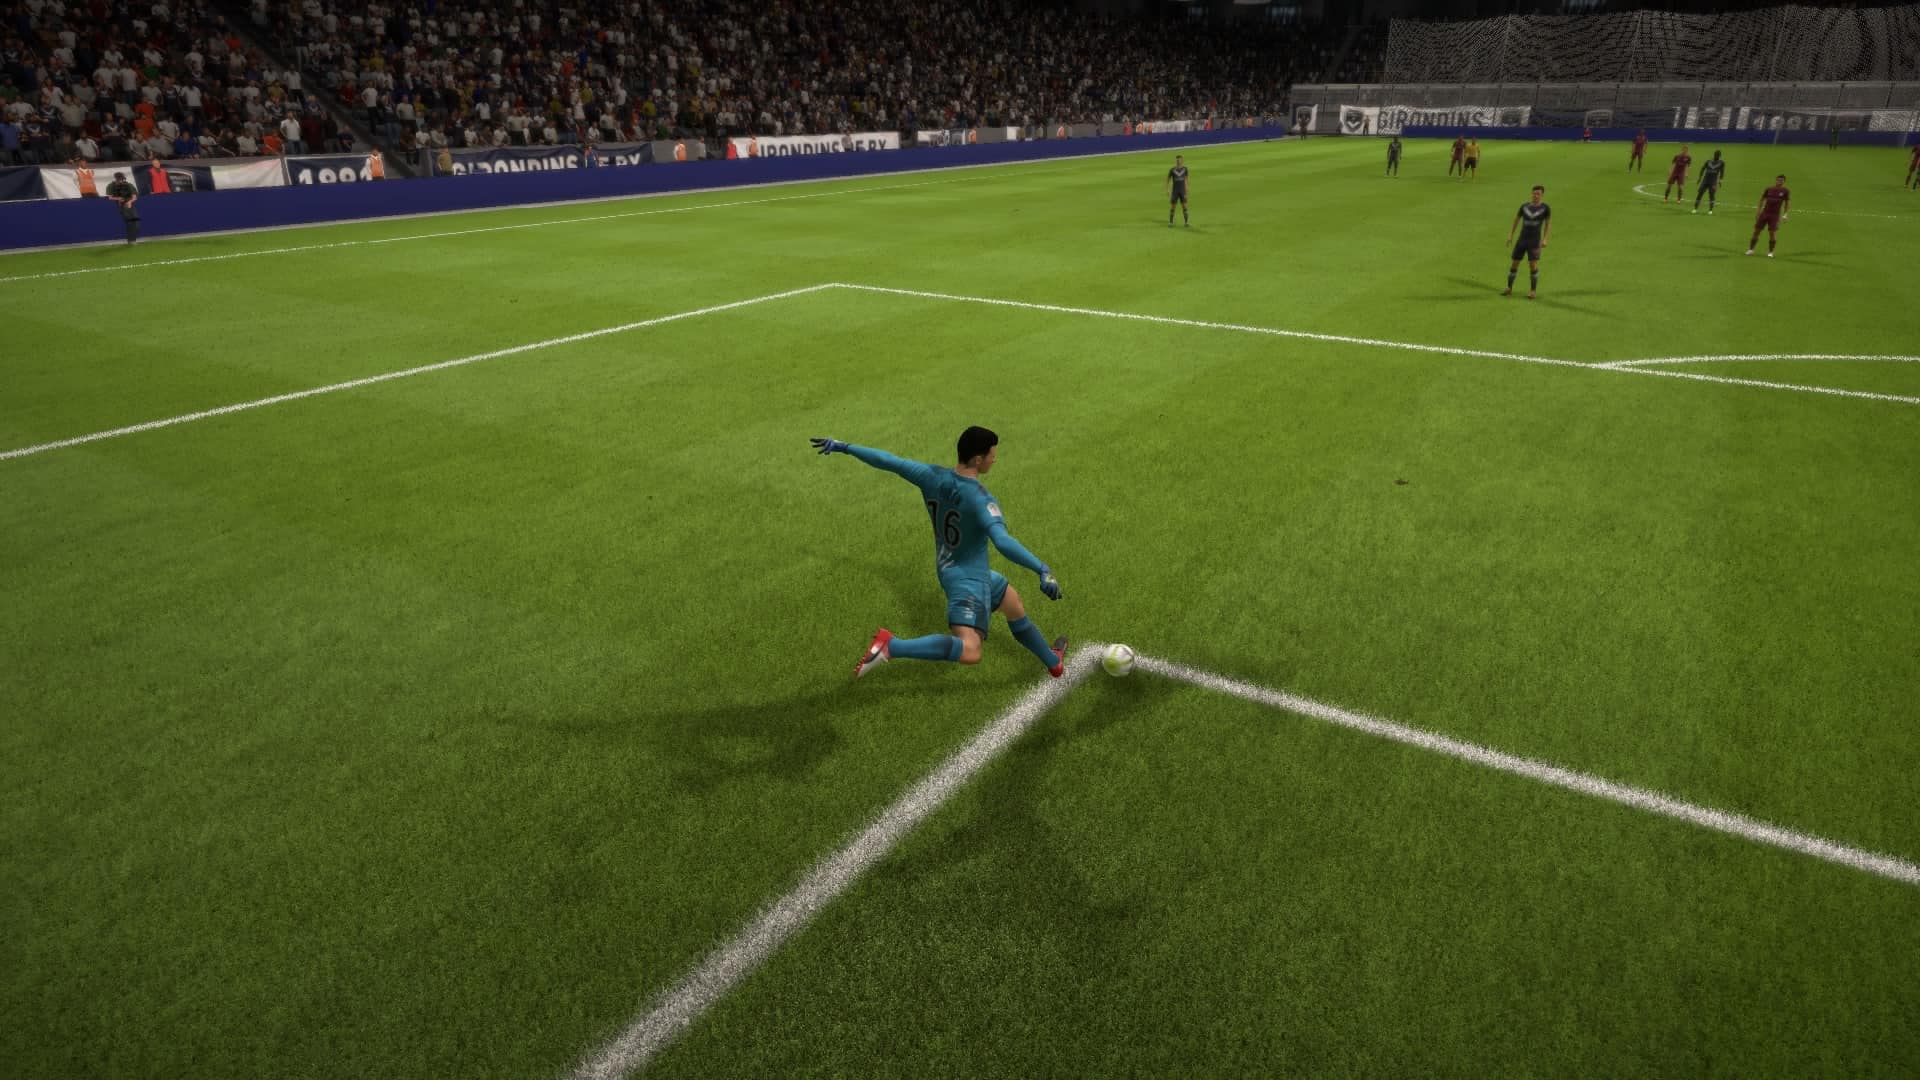 Gaetan Poussin takes a goal kick